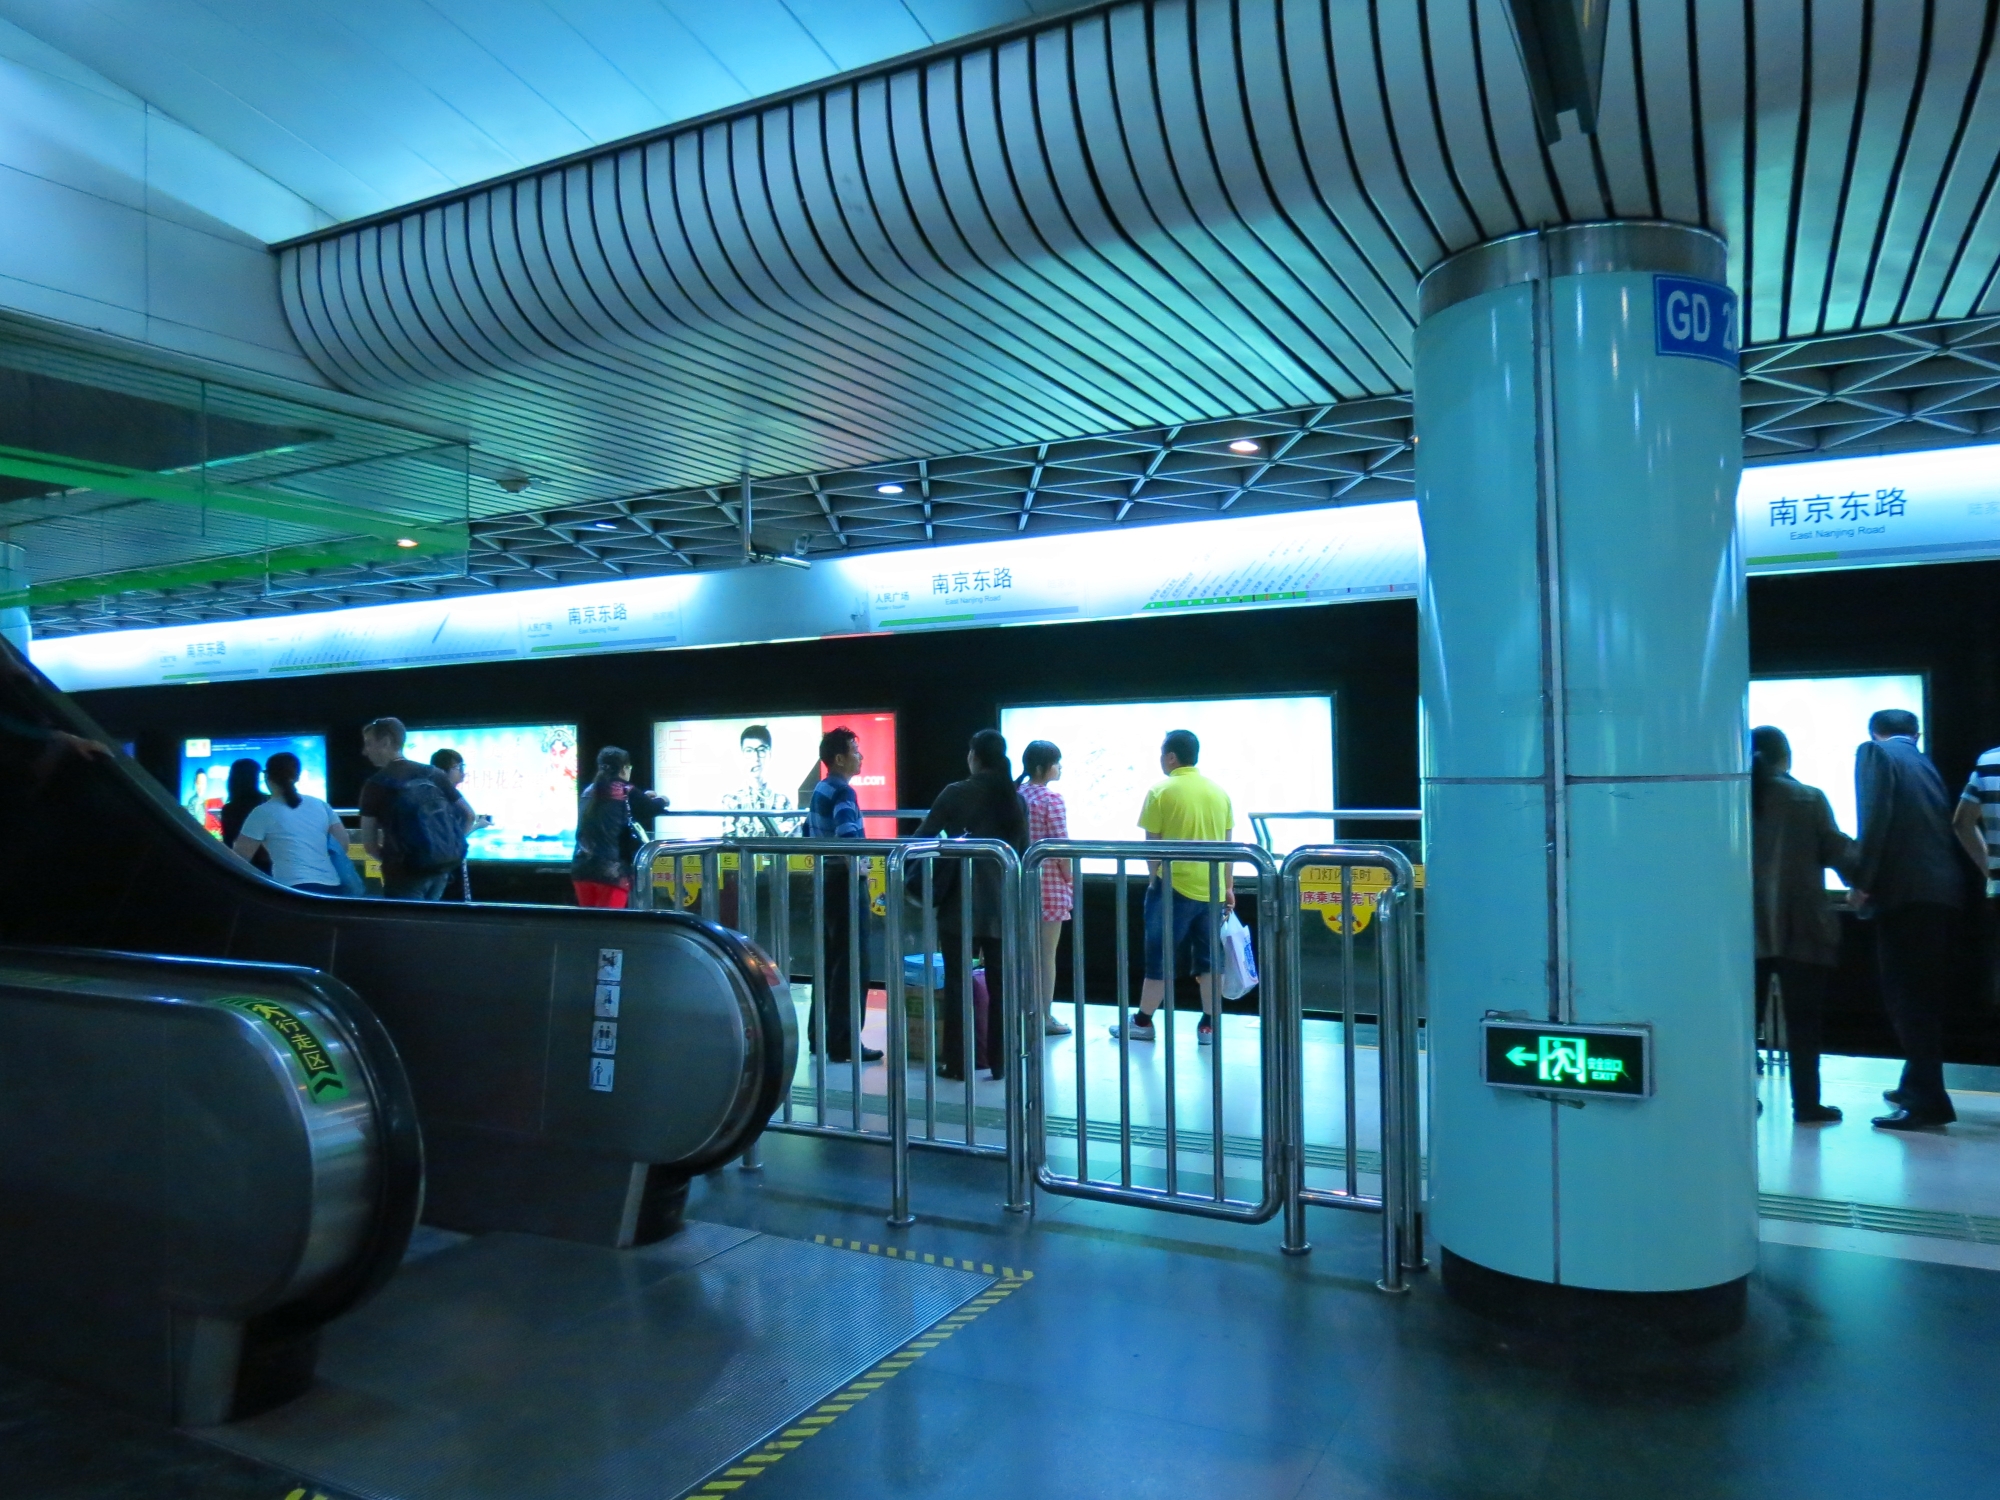 Аэропорт Шанхай Пудун. Метро Шанхая. Аэропорт Шанхая транзитная зона. Поезд аэропорт - Шанхай Пудун.